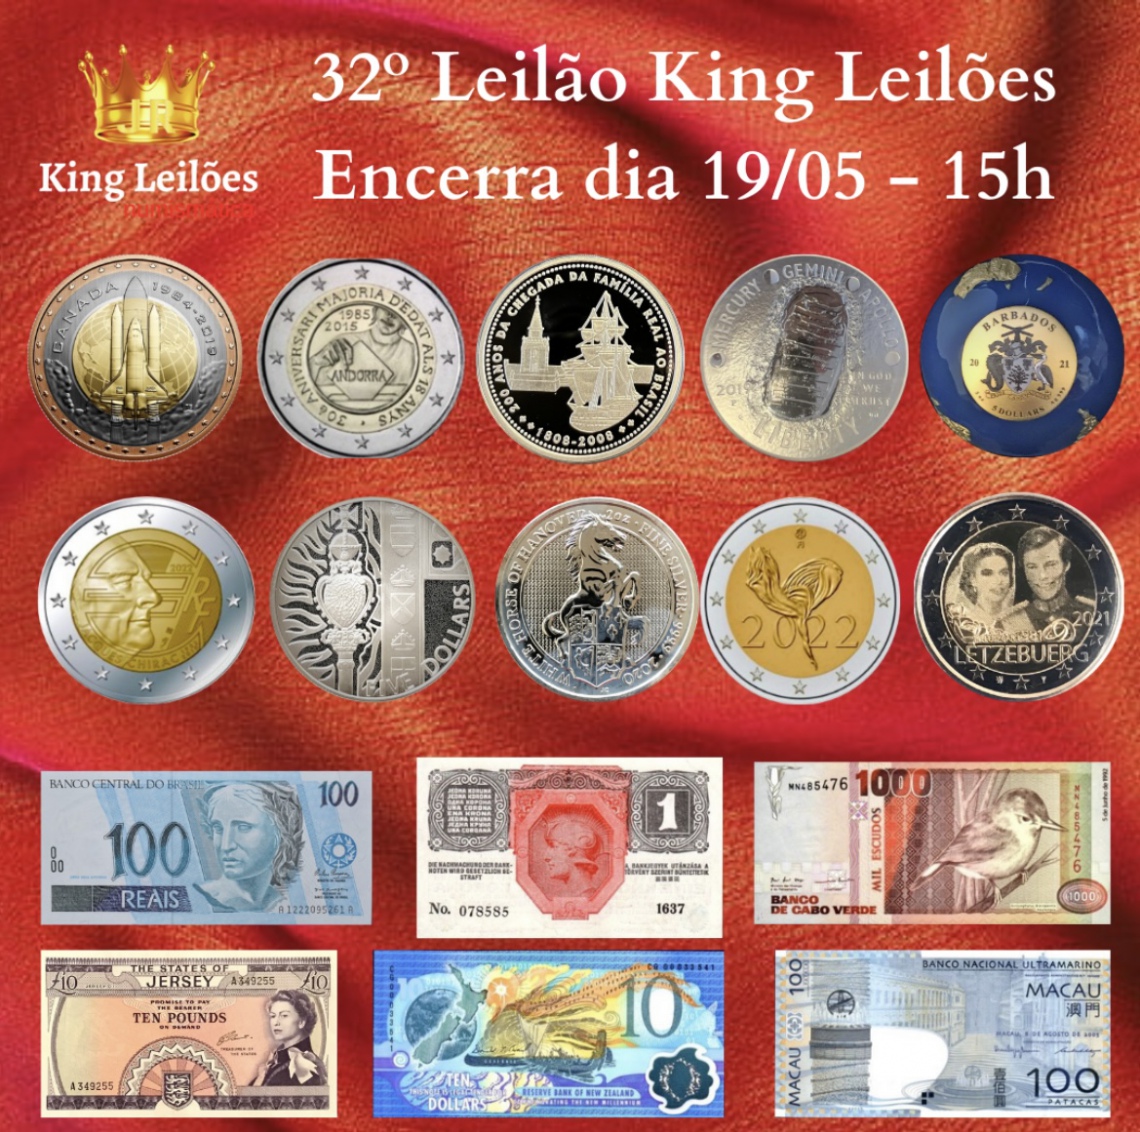 32º LEILÃO KING LEILÕES DE NUMISMÁTICA, MULTICOLECIONISMO E ANTIGUIDADES